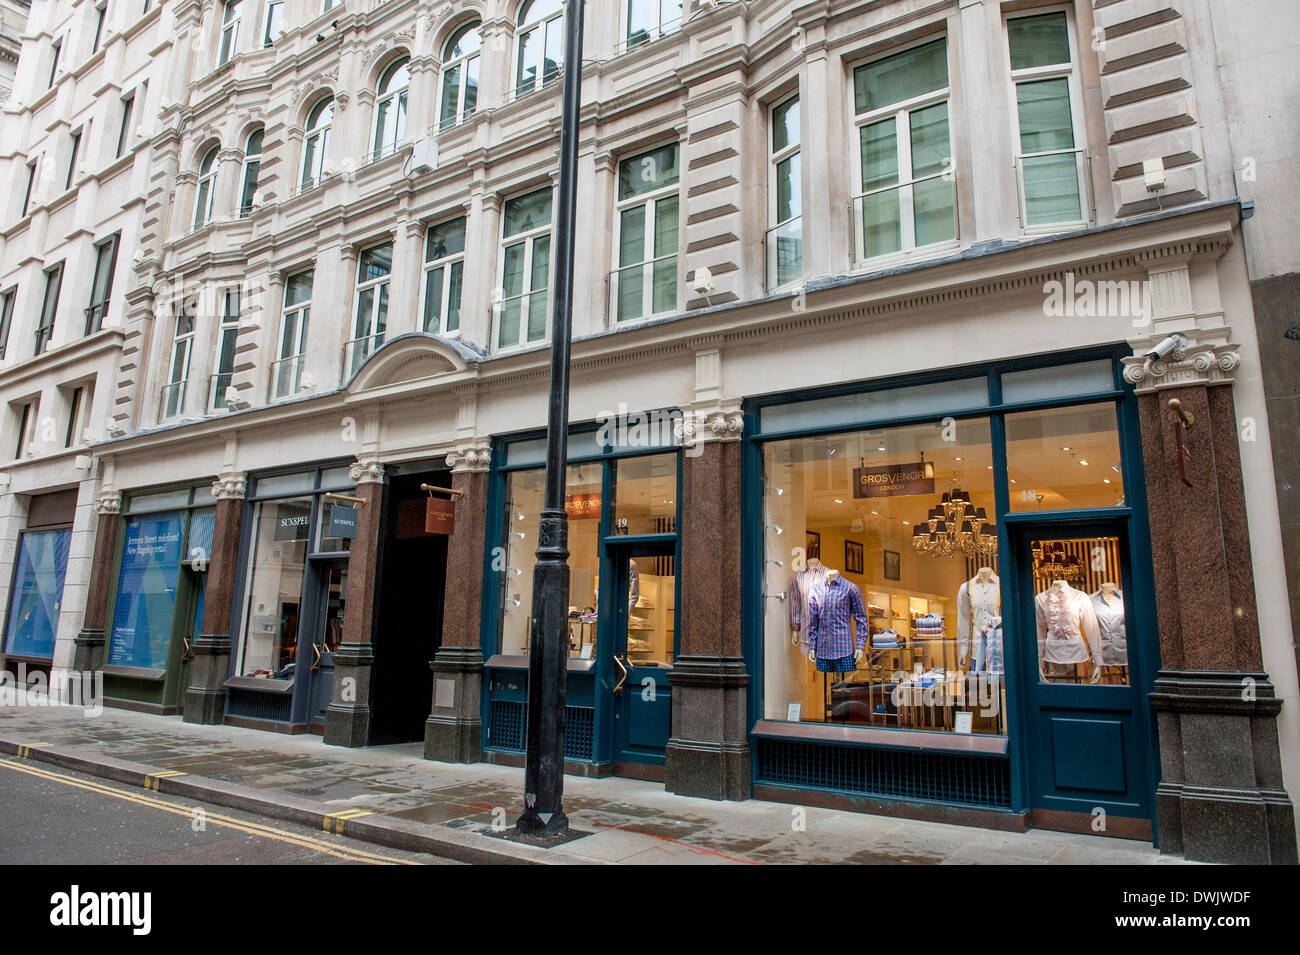 Grosvenor shirts 18-19 Jermyn Street, London SW1Y 6LT Stock Photo - Alamy